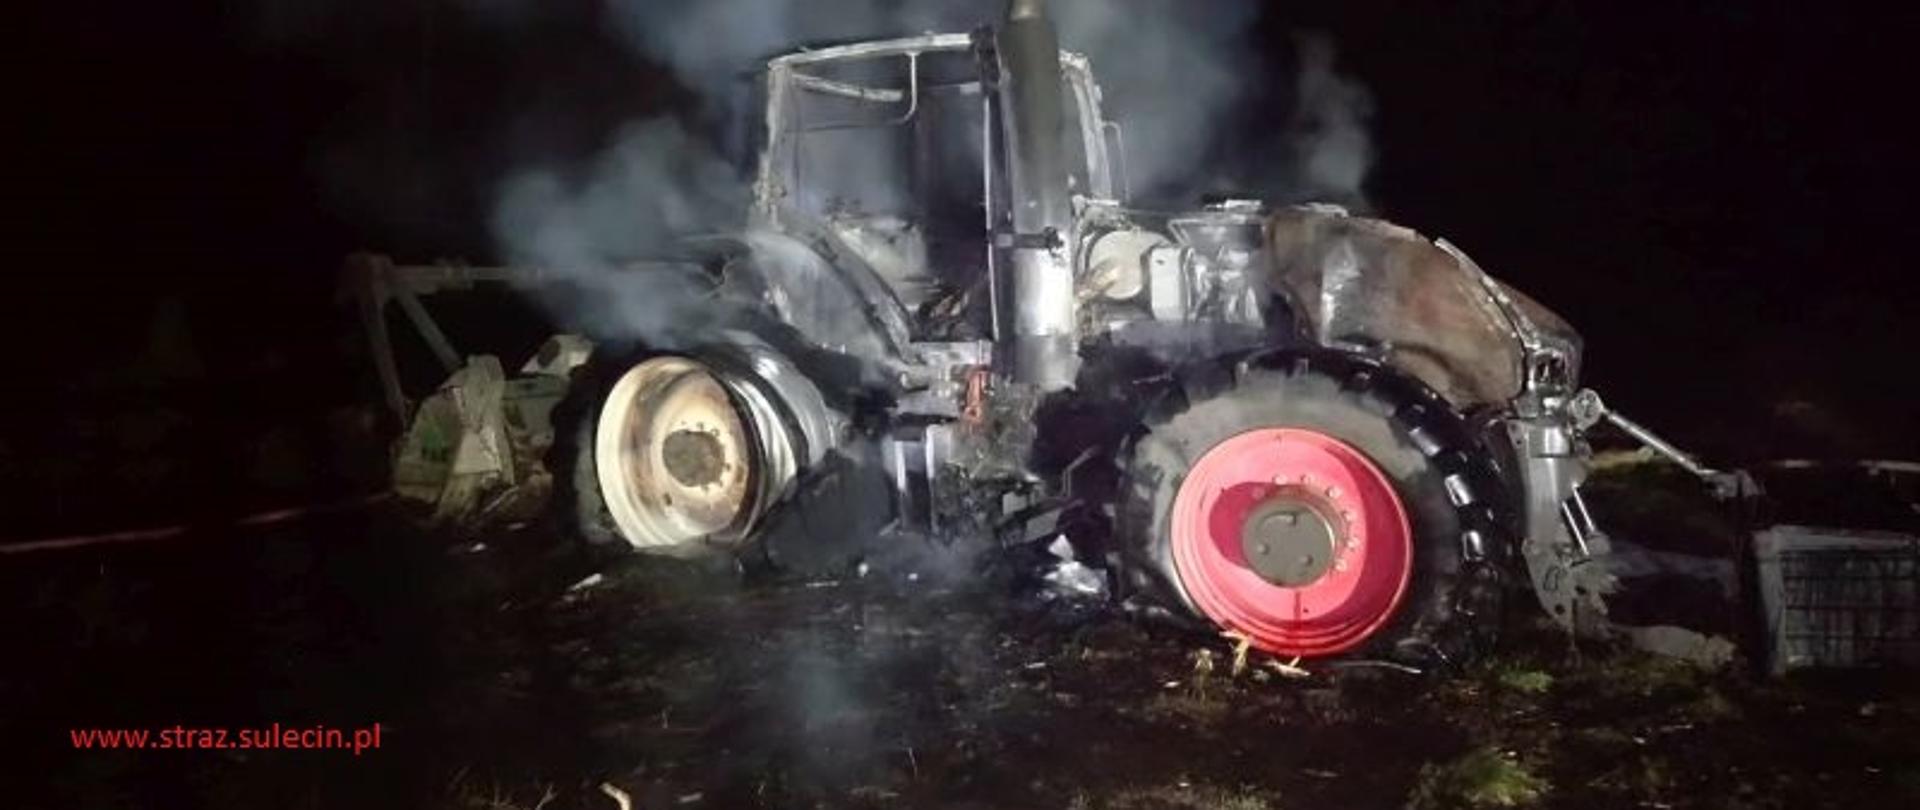 Na zdjęciu znajduje się spalony ciągnik rolniczy